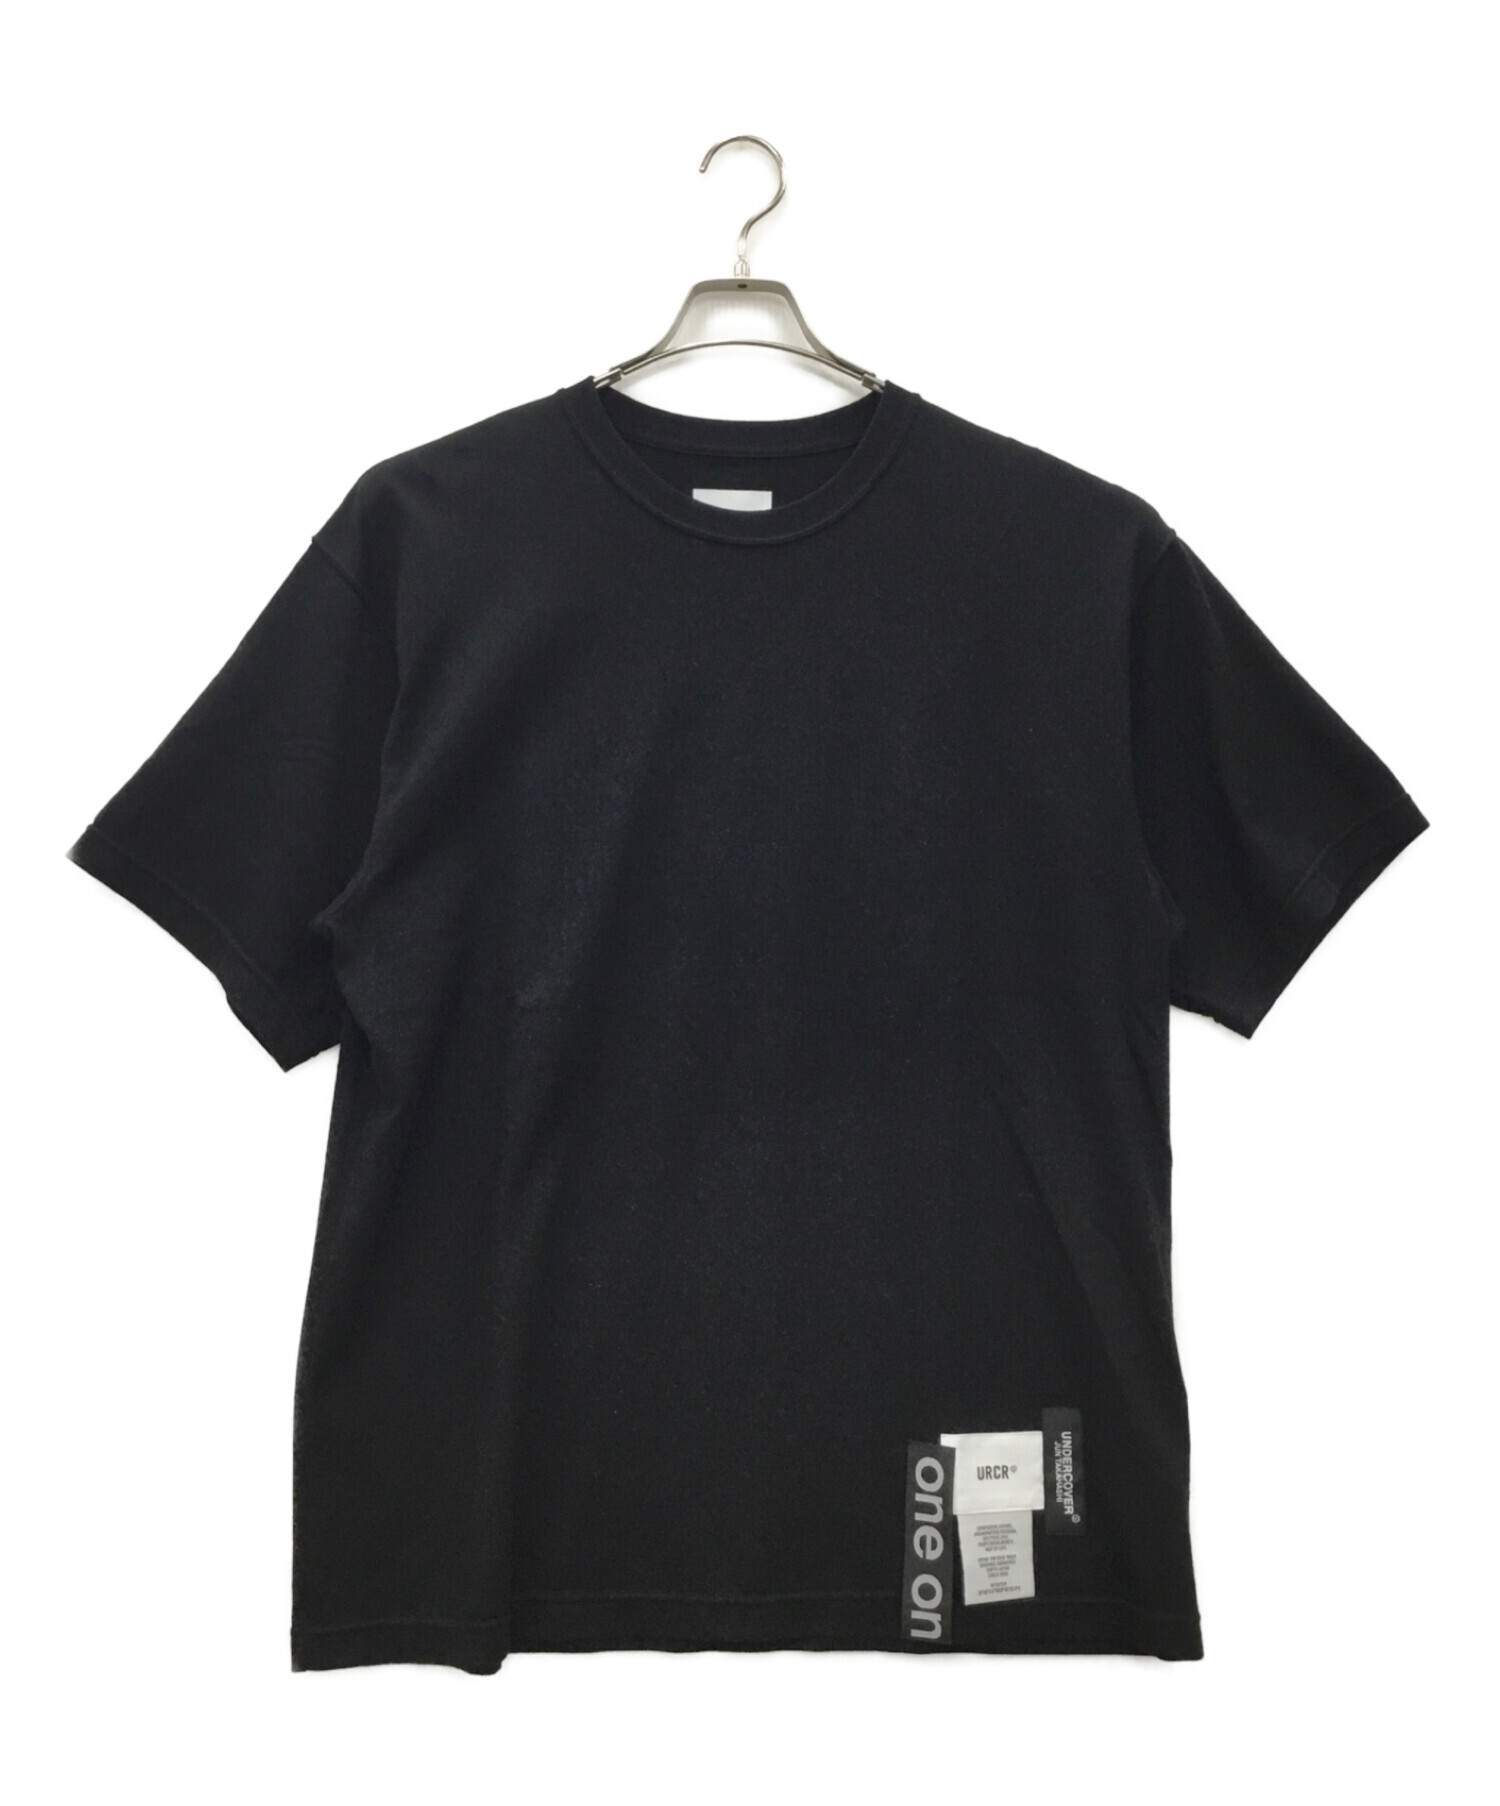 WTAPS (ダブルタップス) UNDERCOVER (アンダーカバー) Tシャツ ブラック サイズ:02